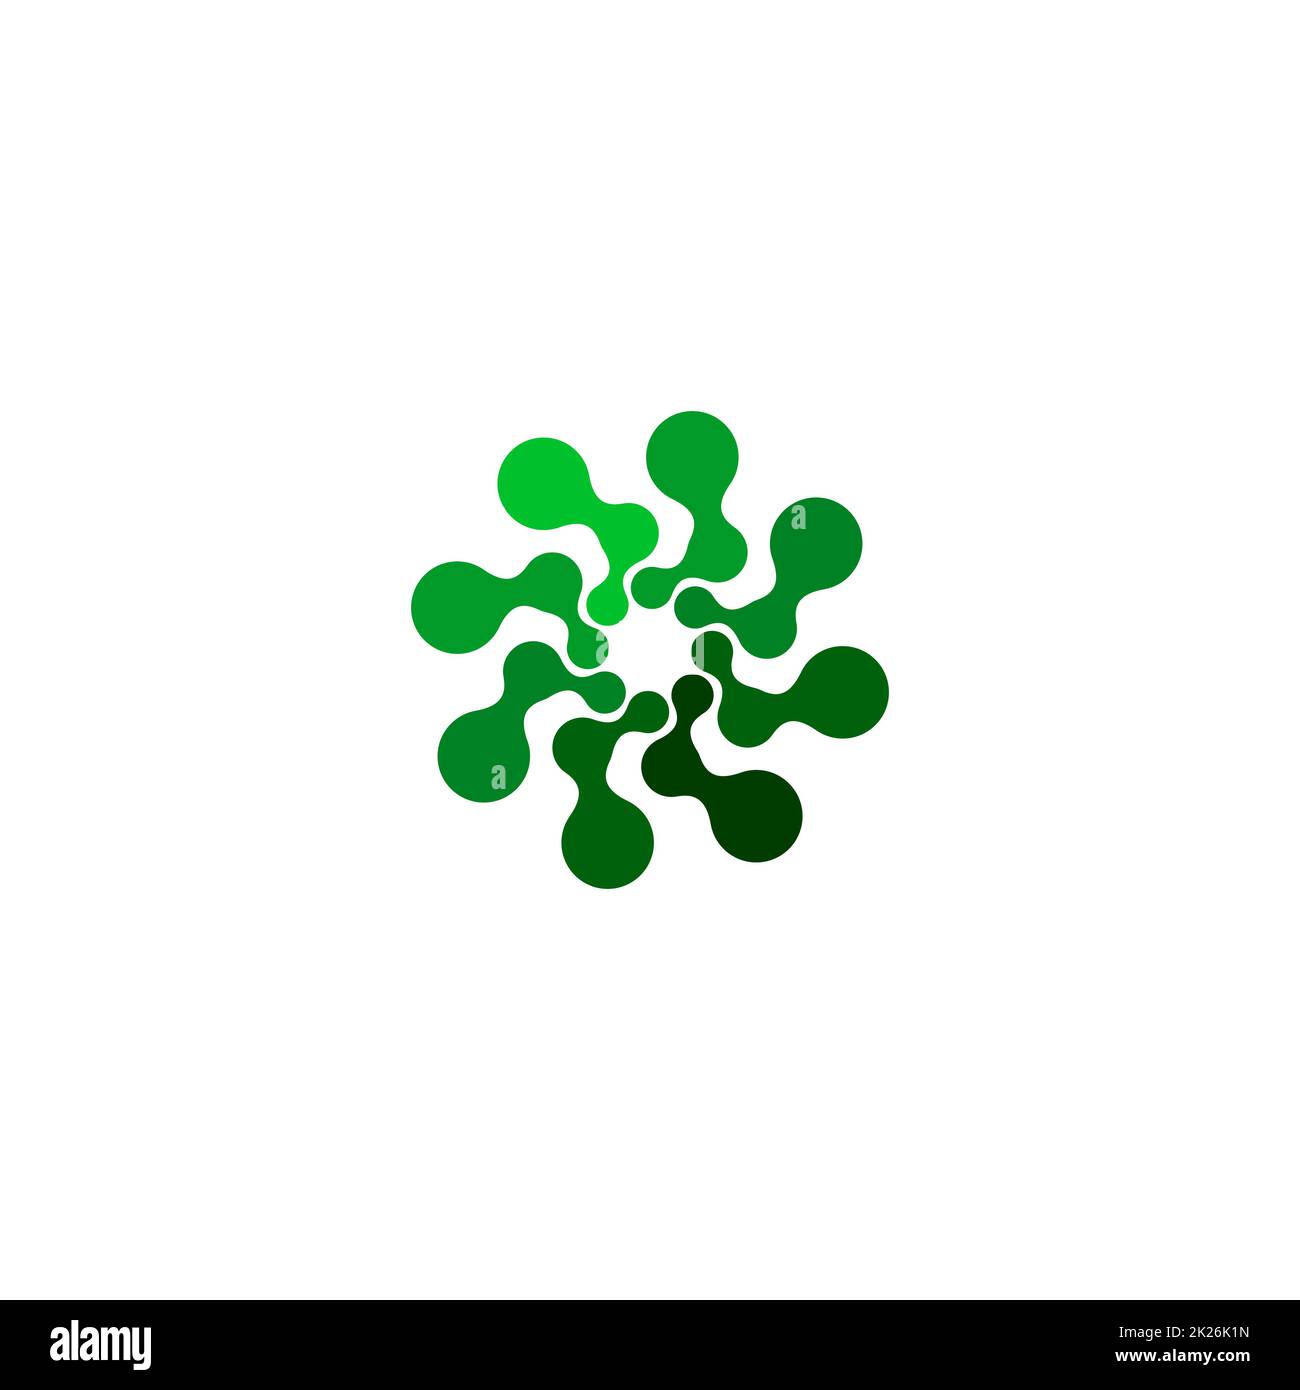 Isoliertes abstraktes grünes, rundes Logo auf weißem Hintergrund, einfache, flache, wirbelförmige Vektordarstellung des Logos Stockfoto